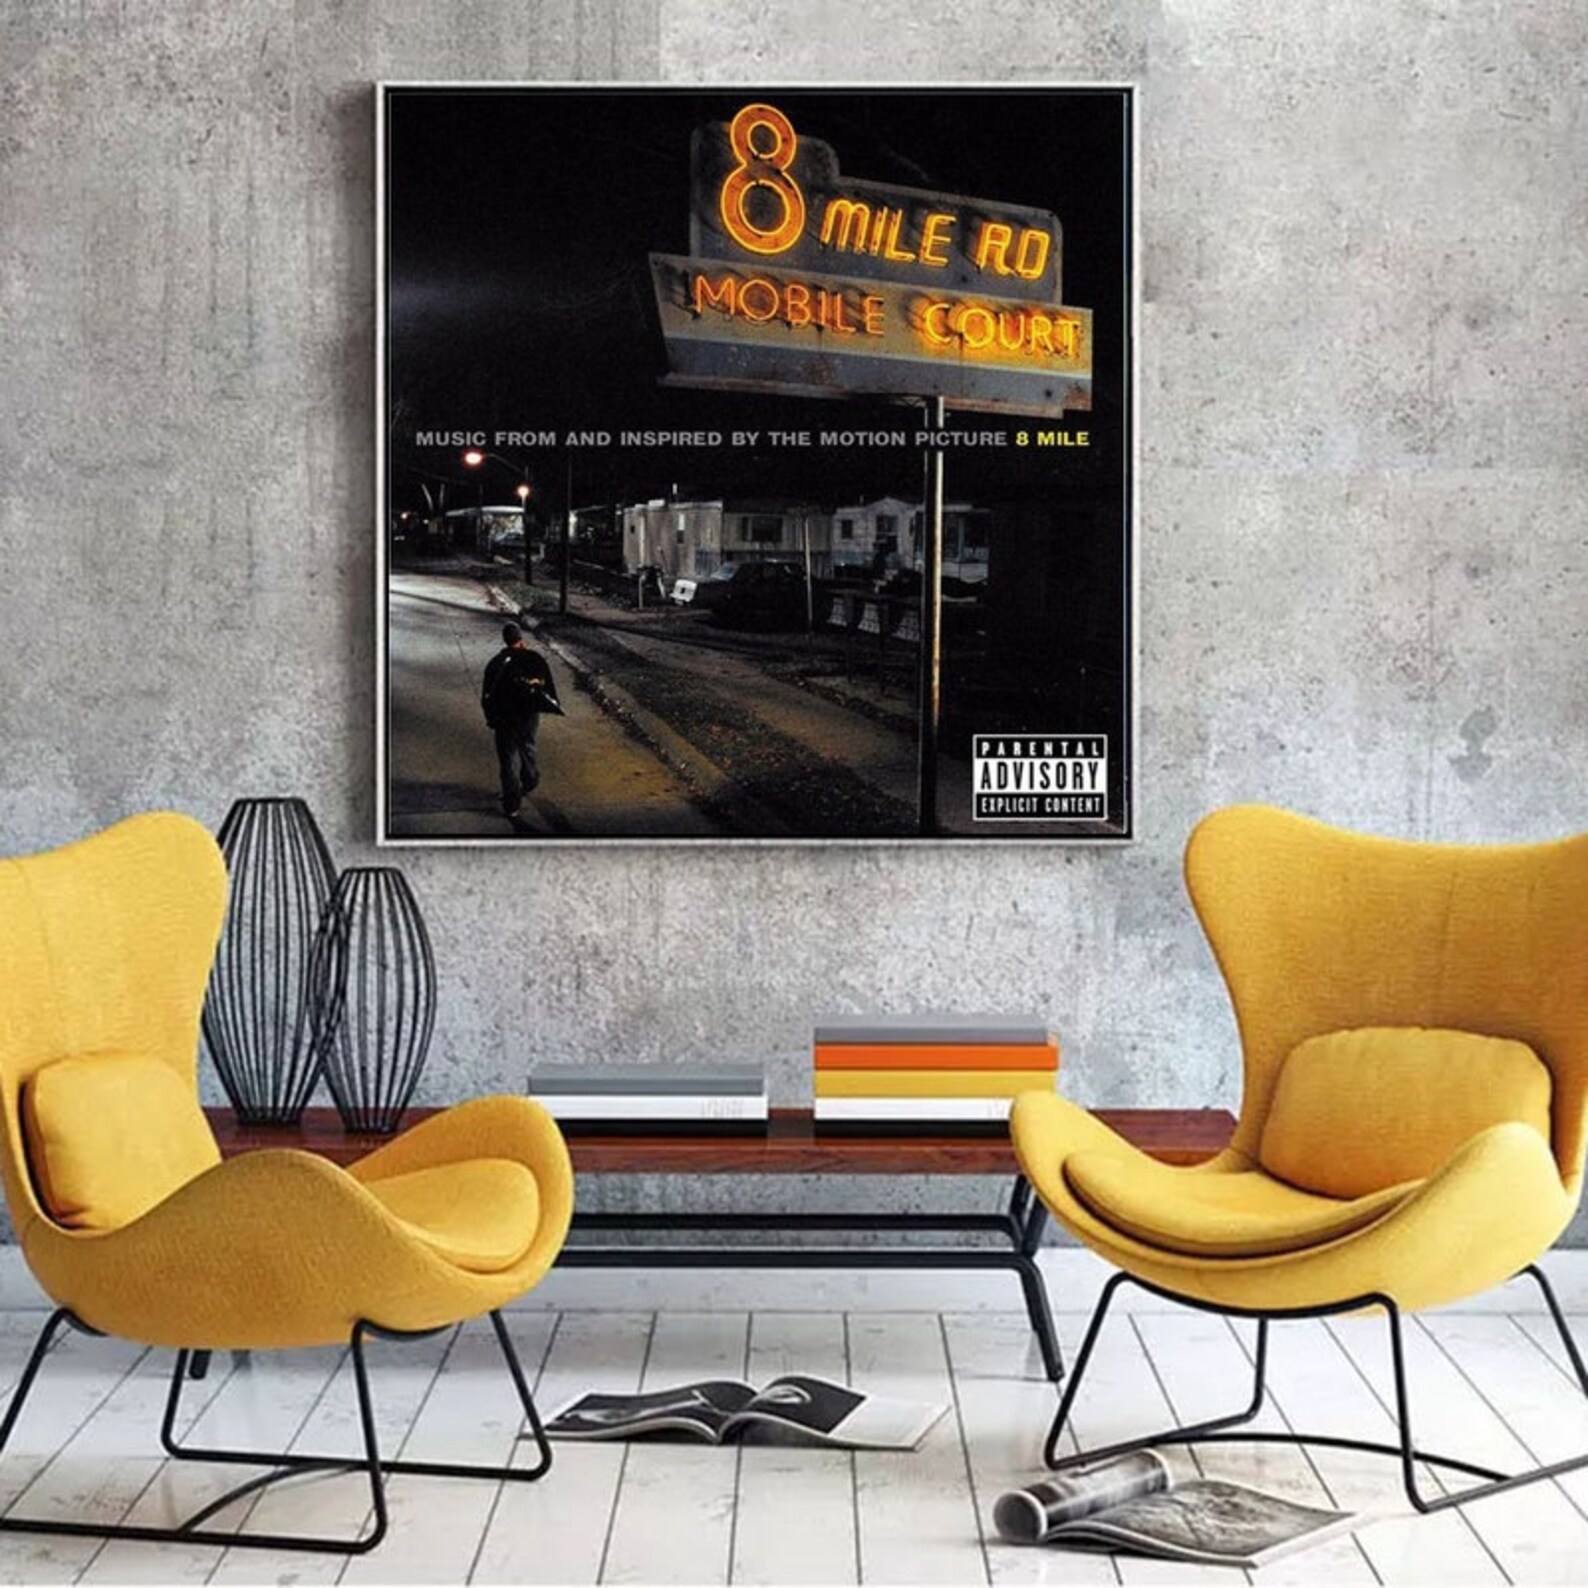 Eminem 8 MILE RD Rapper Music album Music cover Music Poster | Etsy